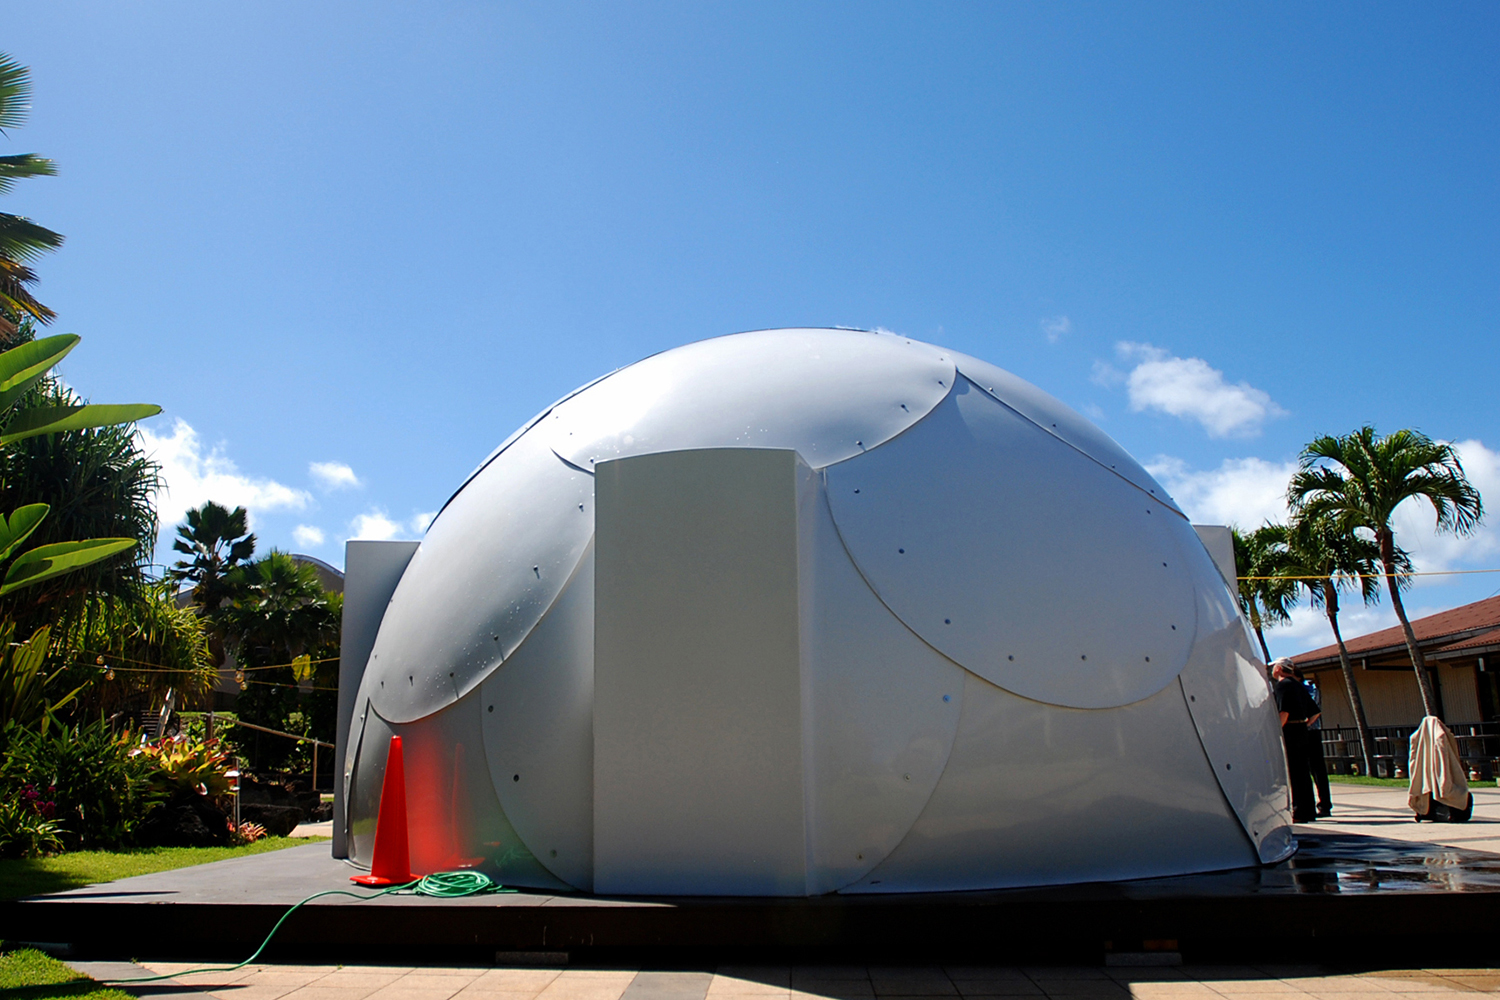 Una iglesia en Hawái instala iglús para alojar a personas sin hogar